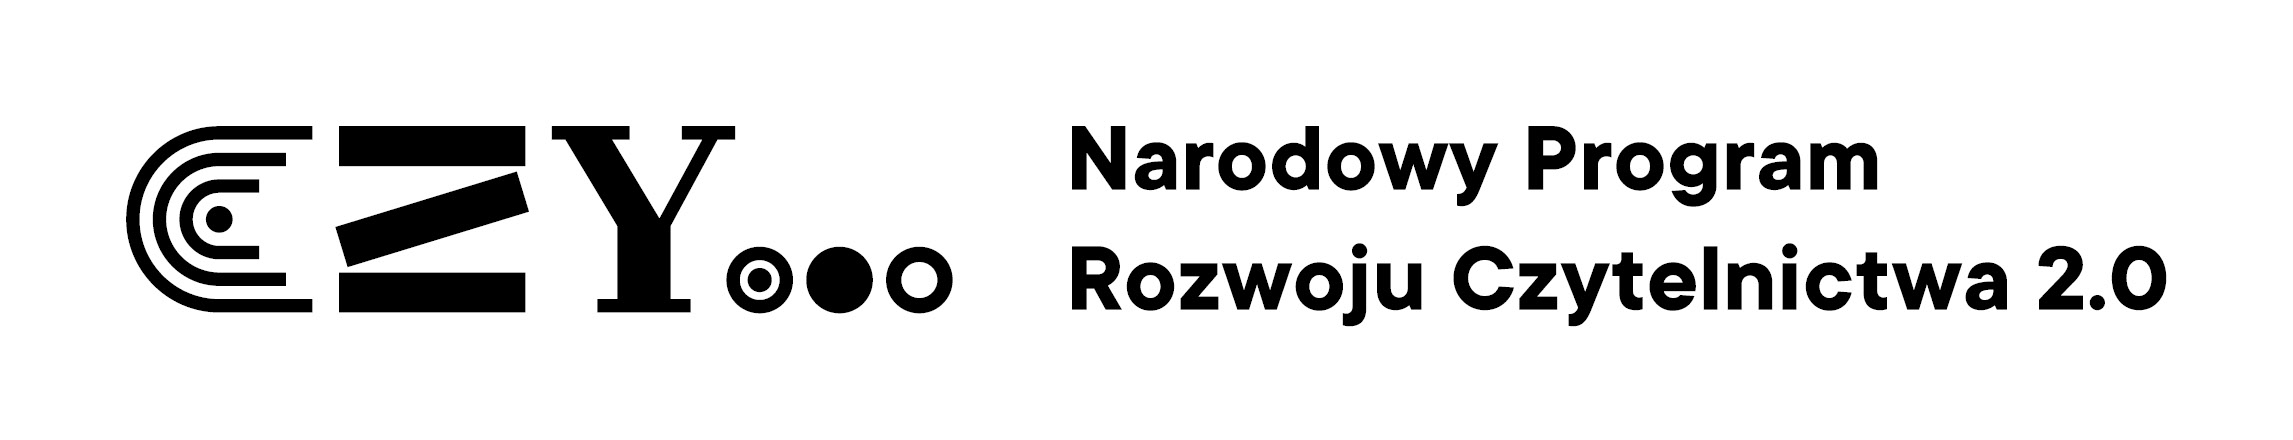 nprcz logotyp poziomy rgb